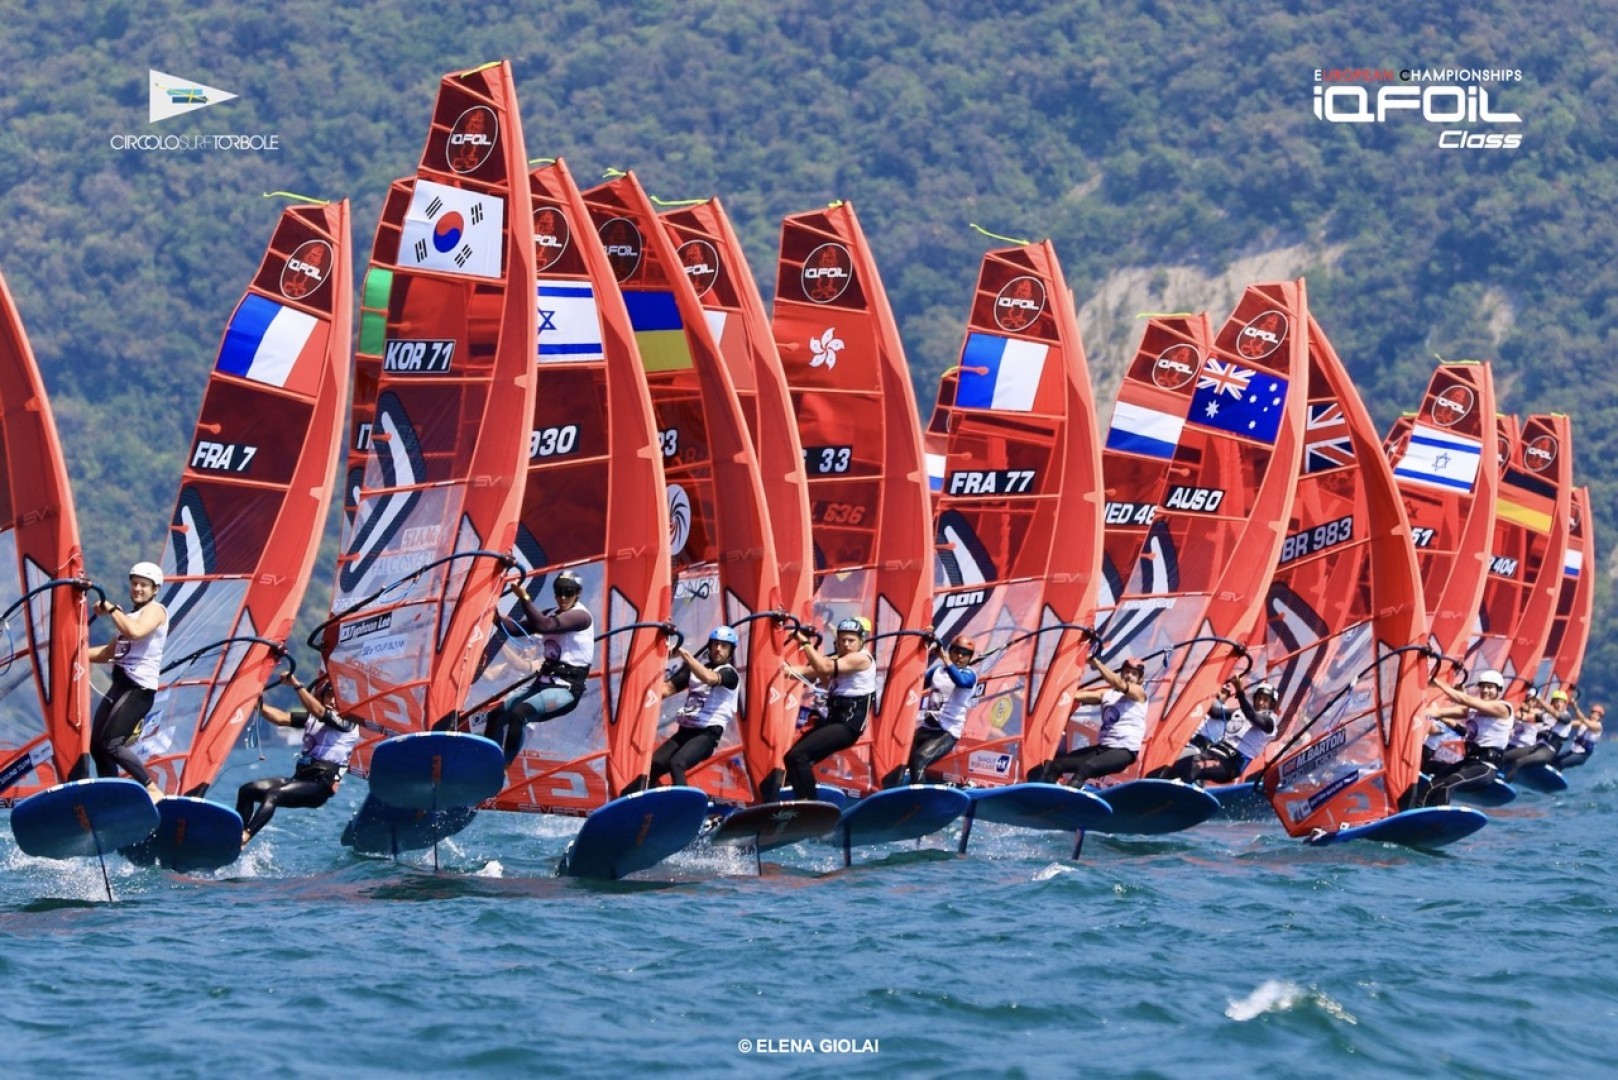 Windsurf olimpico: Nicolò Renna ancora secondo agli Europei iQFoil di Torbole